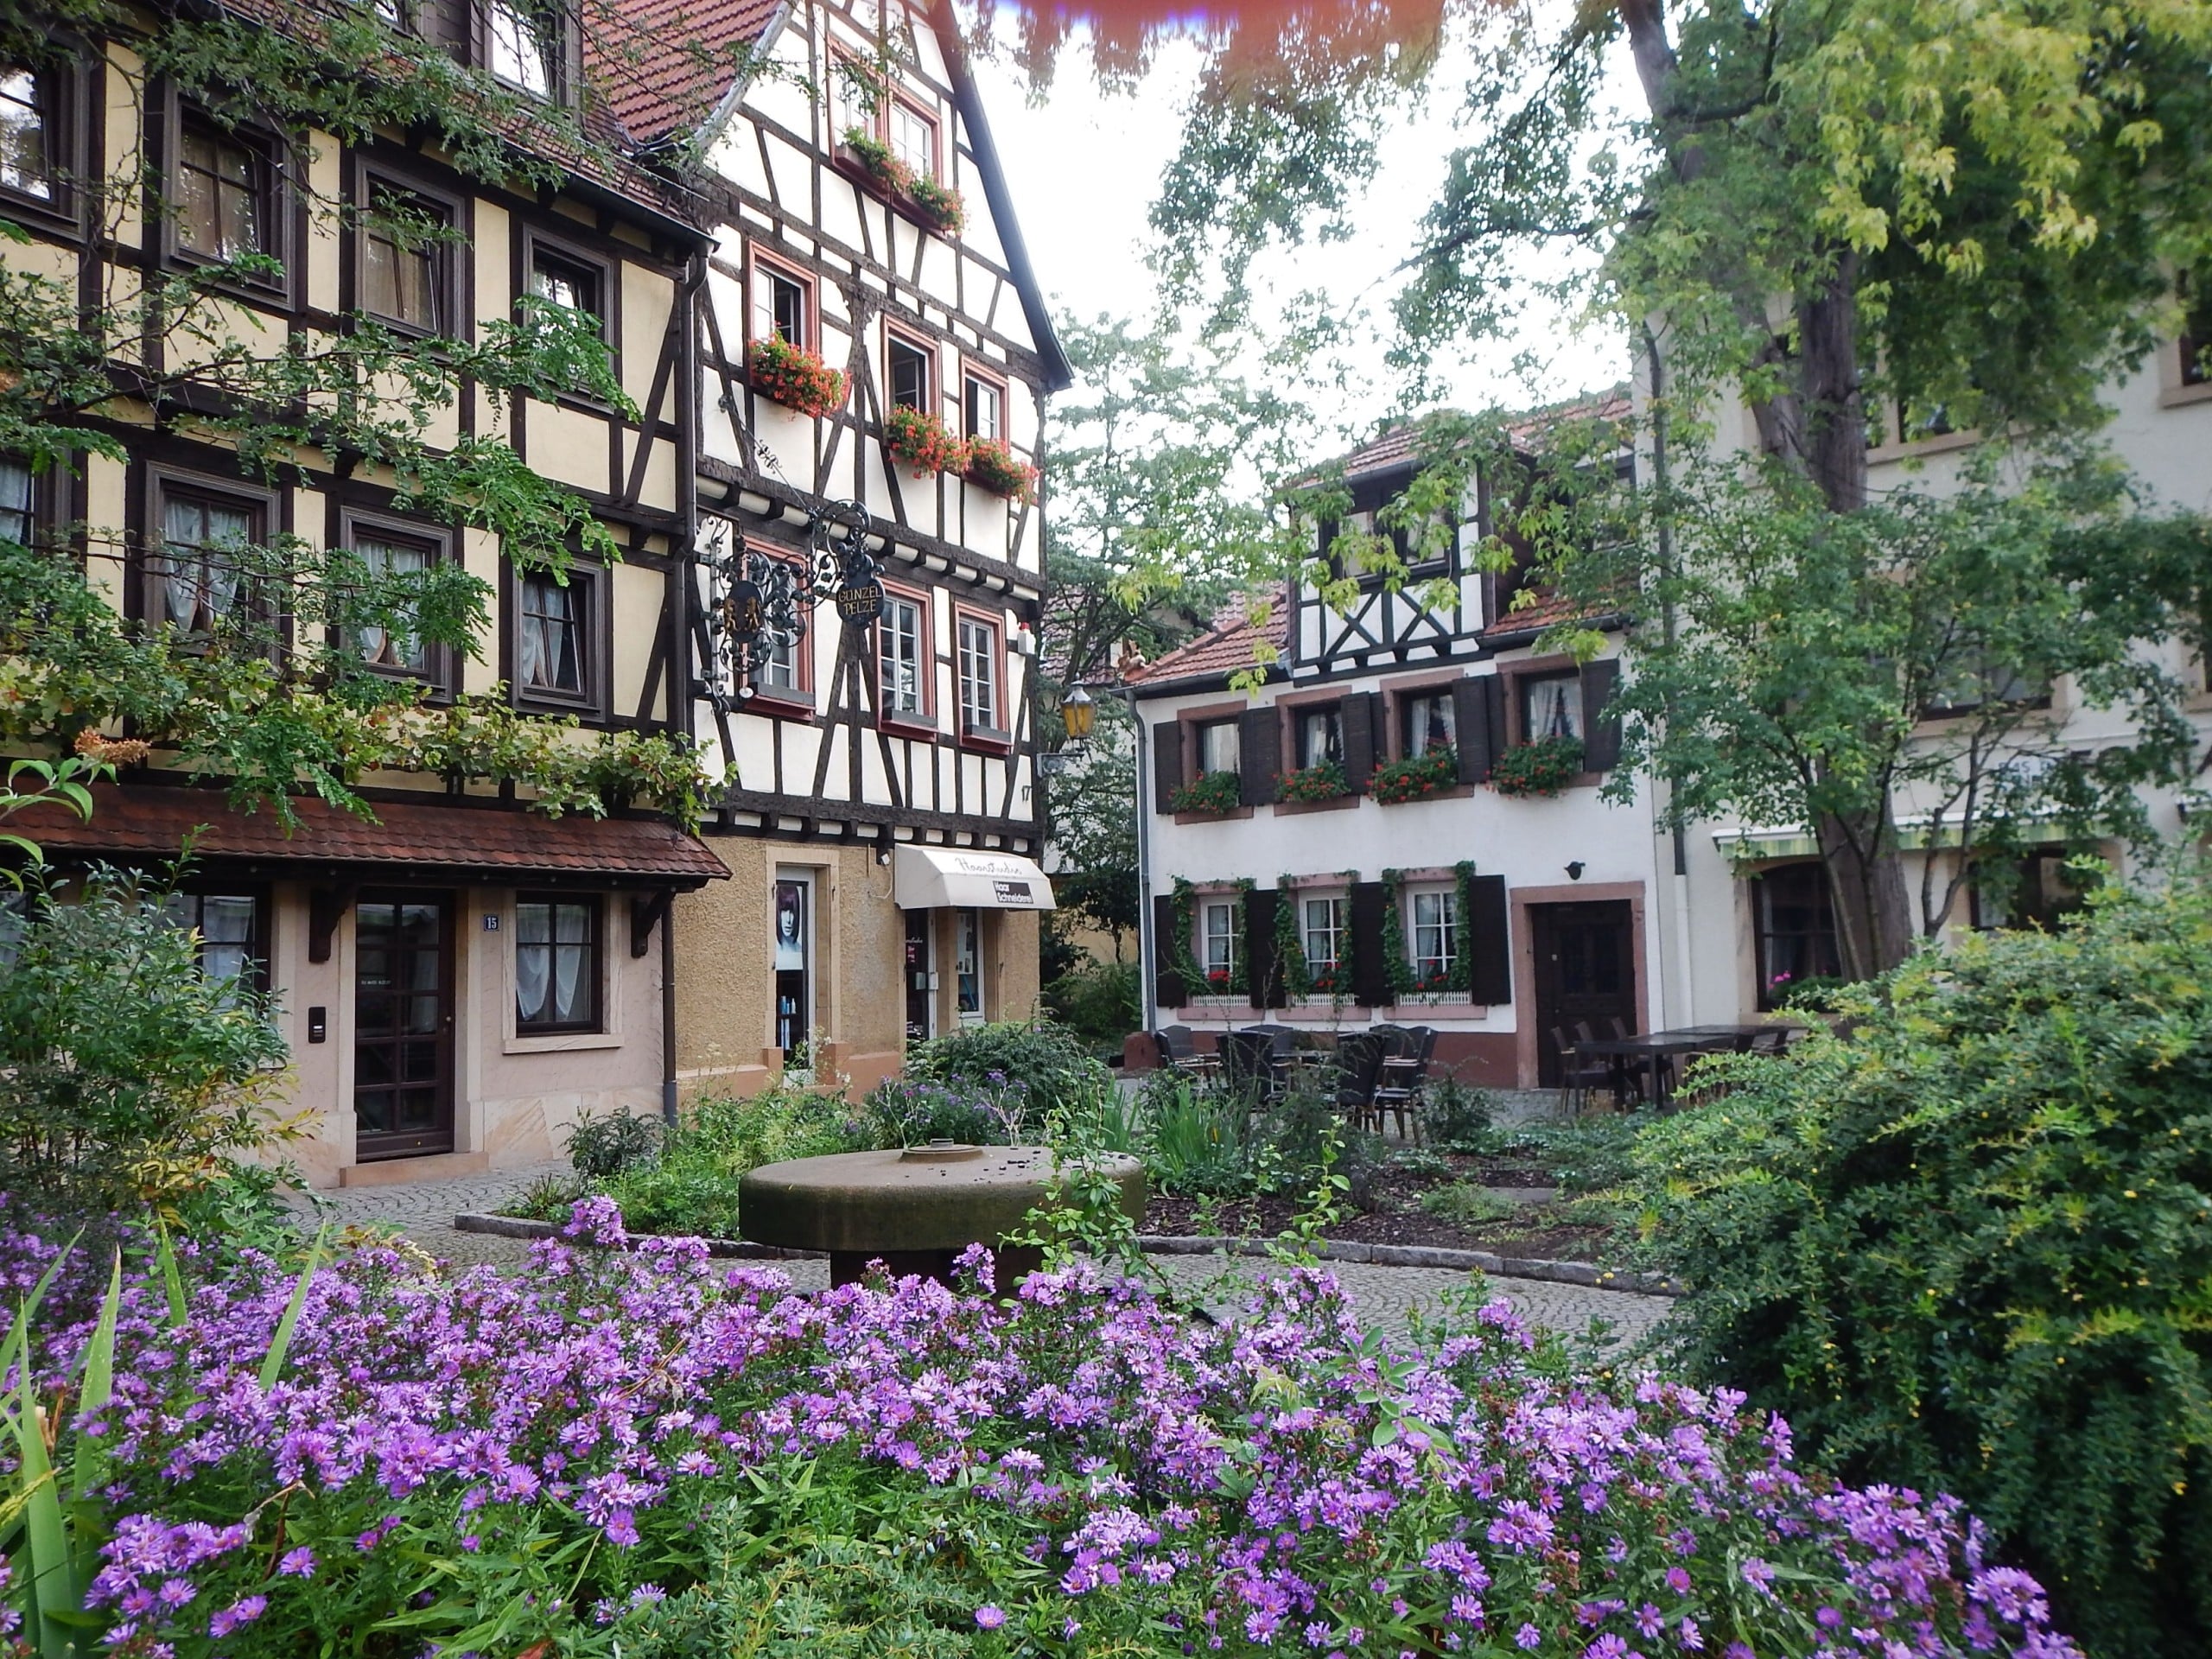 Neustadt erhofft sich von der Gartenschau 2027 mehr grünen Raum in der Stadt. Bildquelle: qwesy qwesy, CC BY 3.0 , via Wikimedia Commons